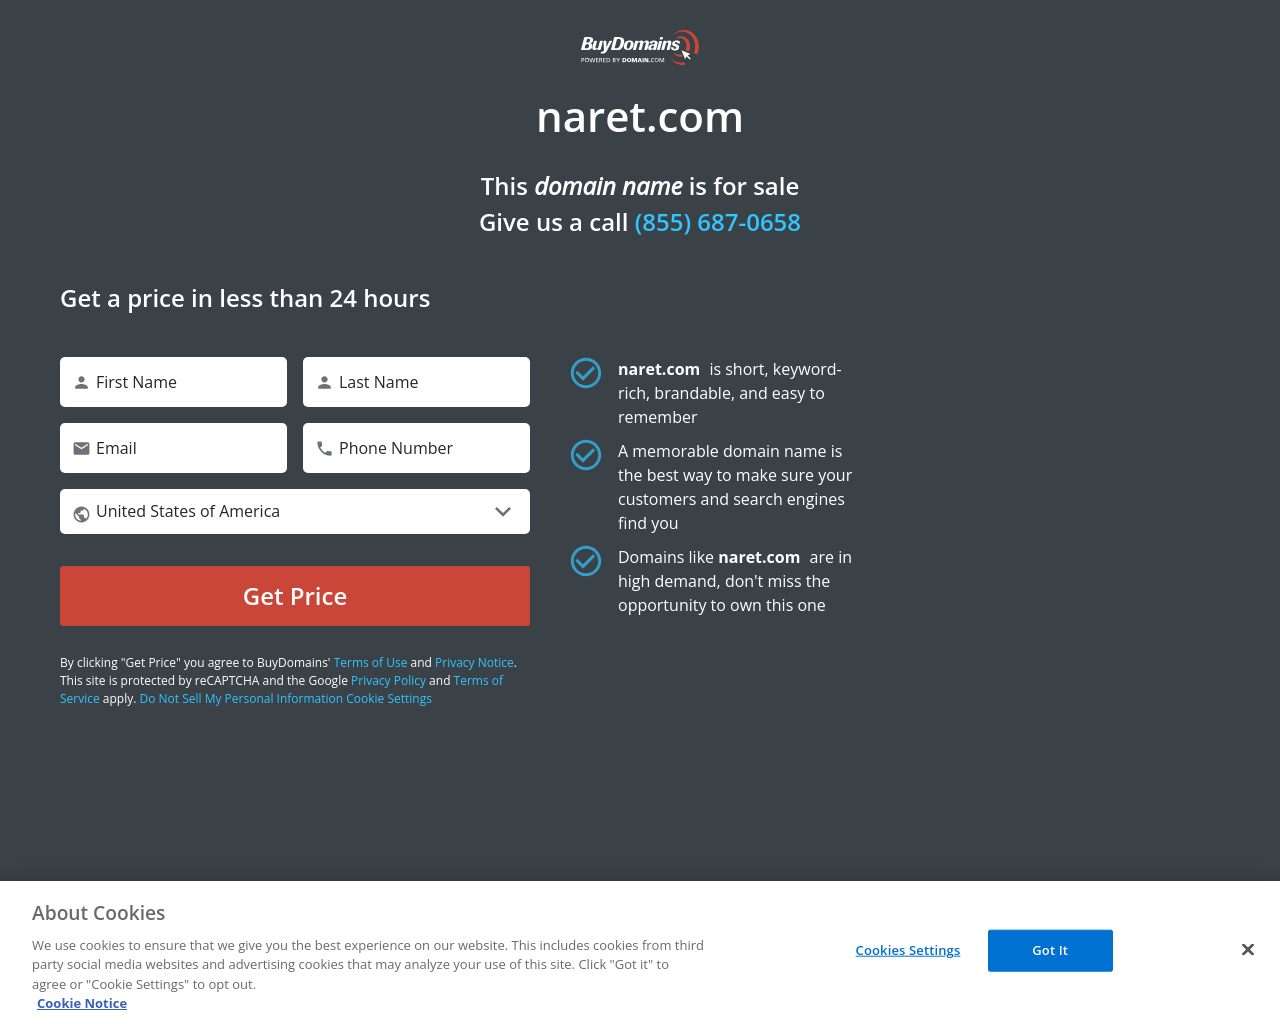 naret.com